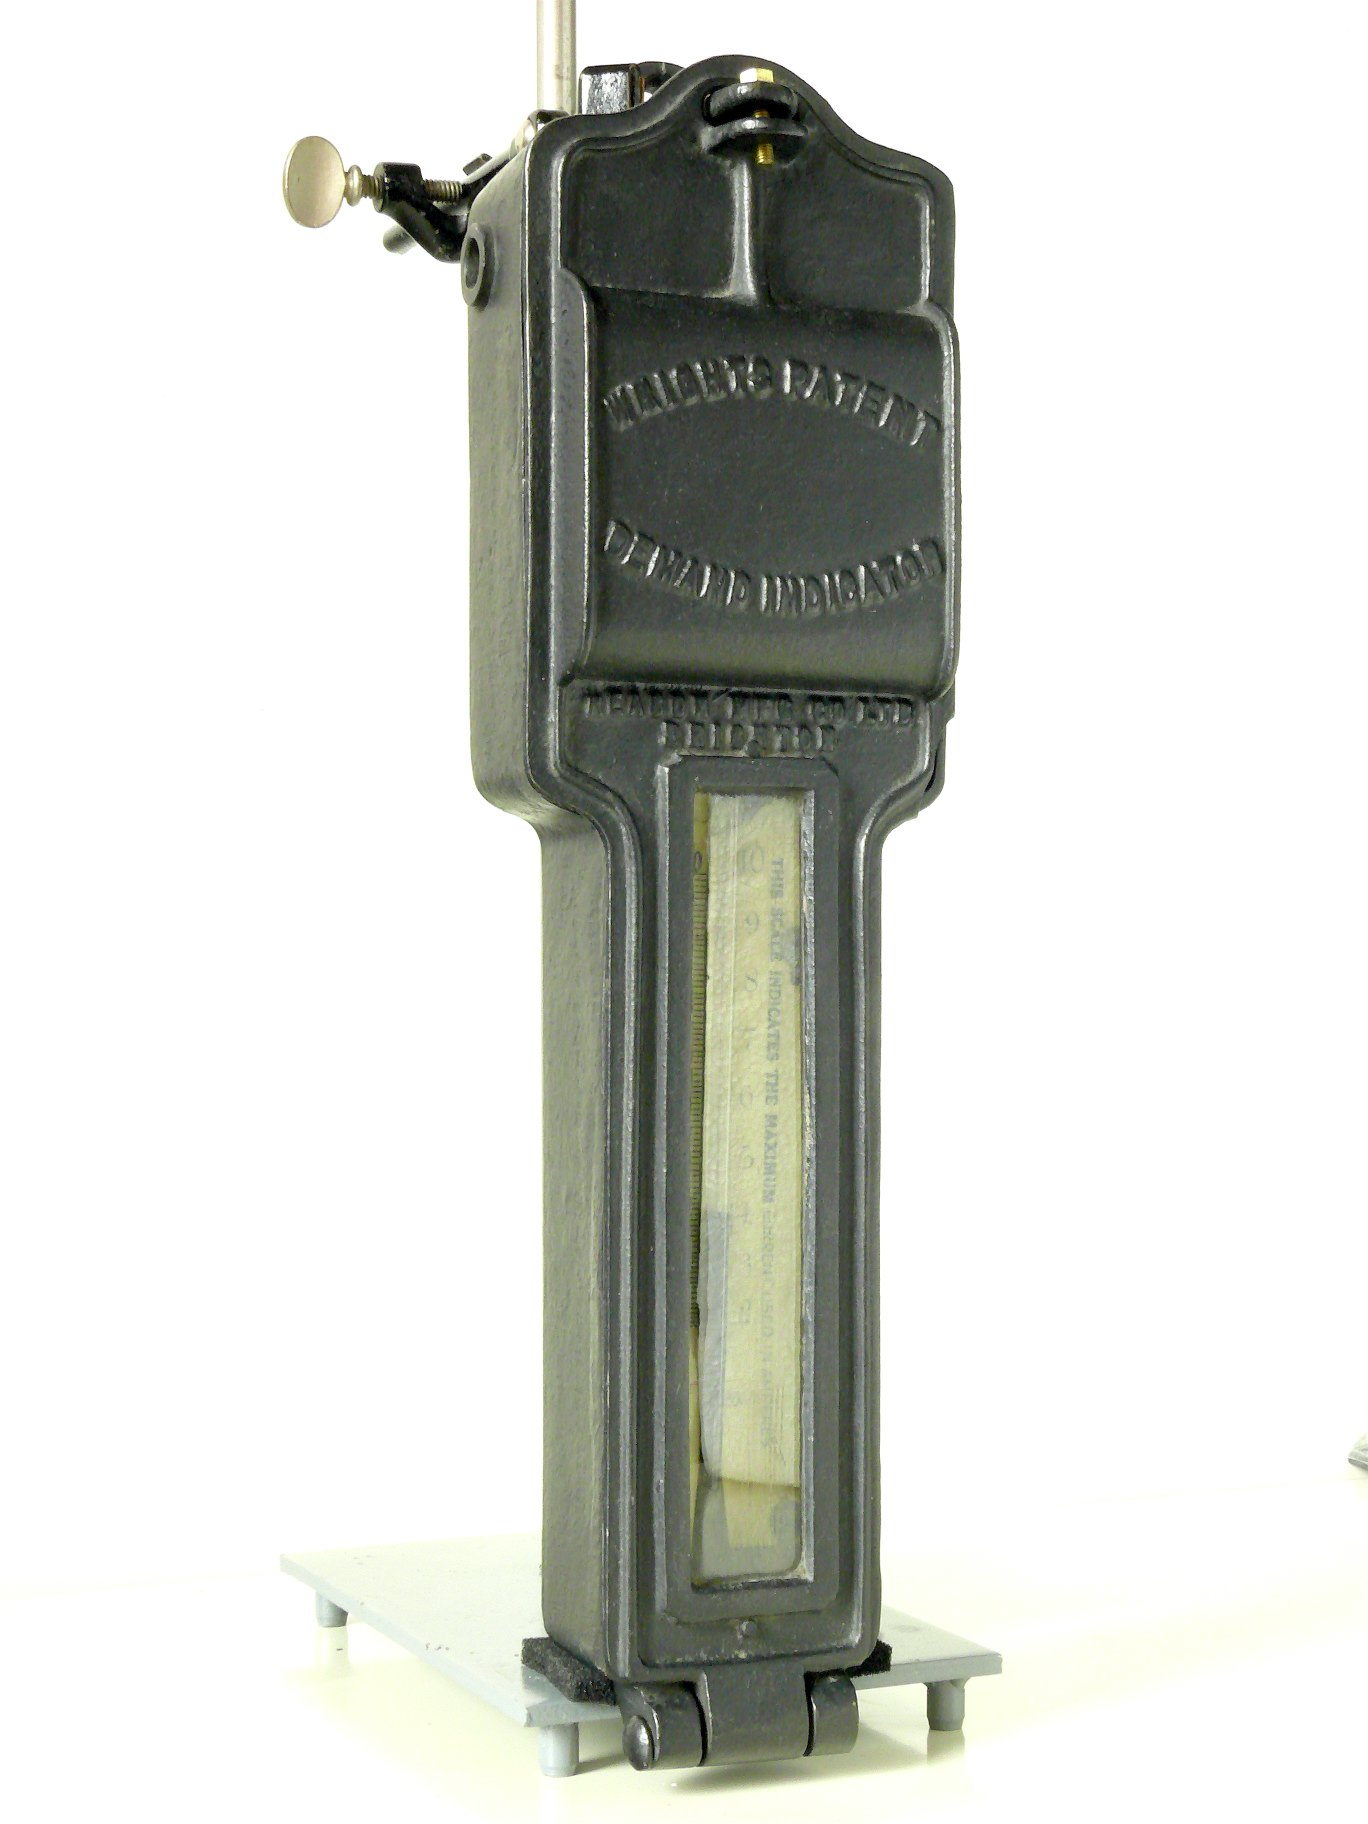 Ampèremètre thermique à maximum
(“Wrights Patent Demand Indicator”)